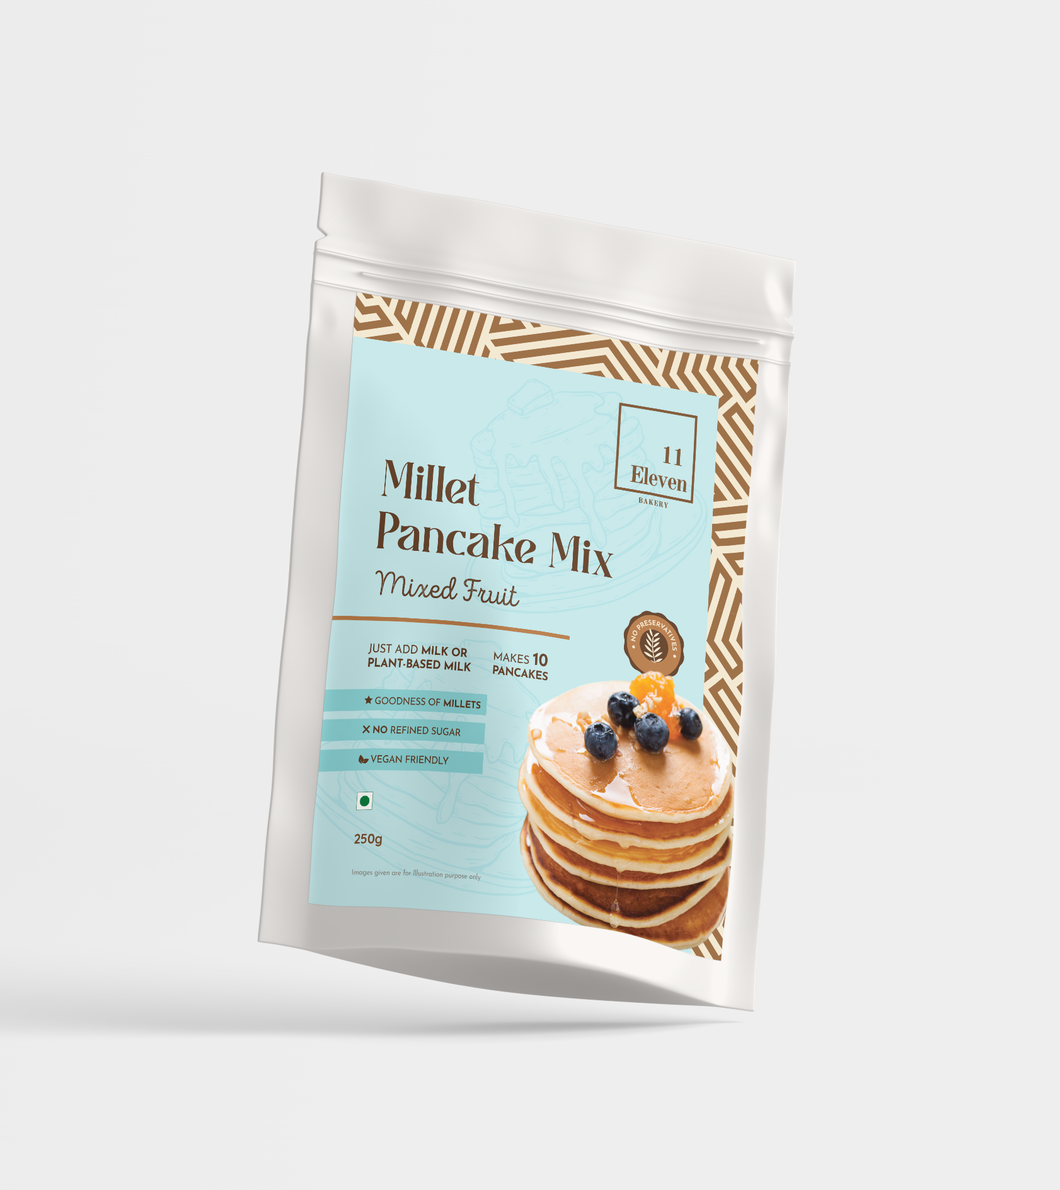 Millet Pancake Mix- Mixed Fruit